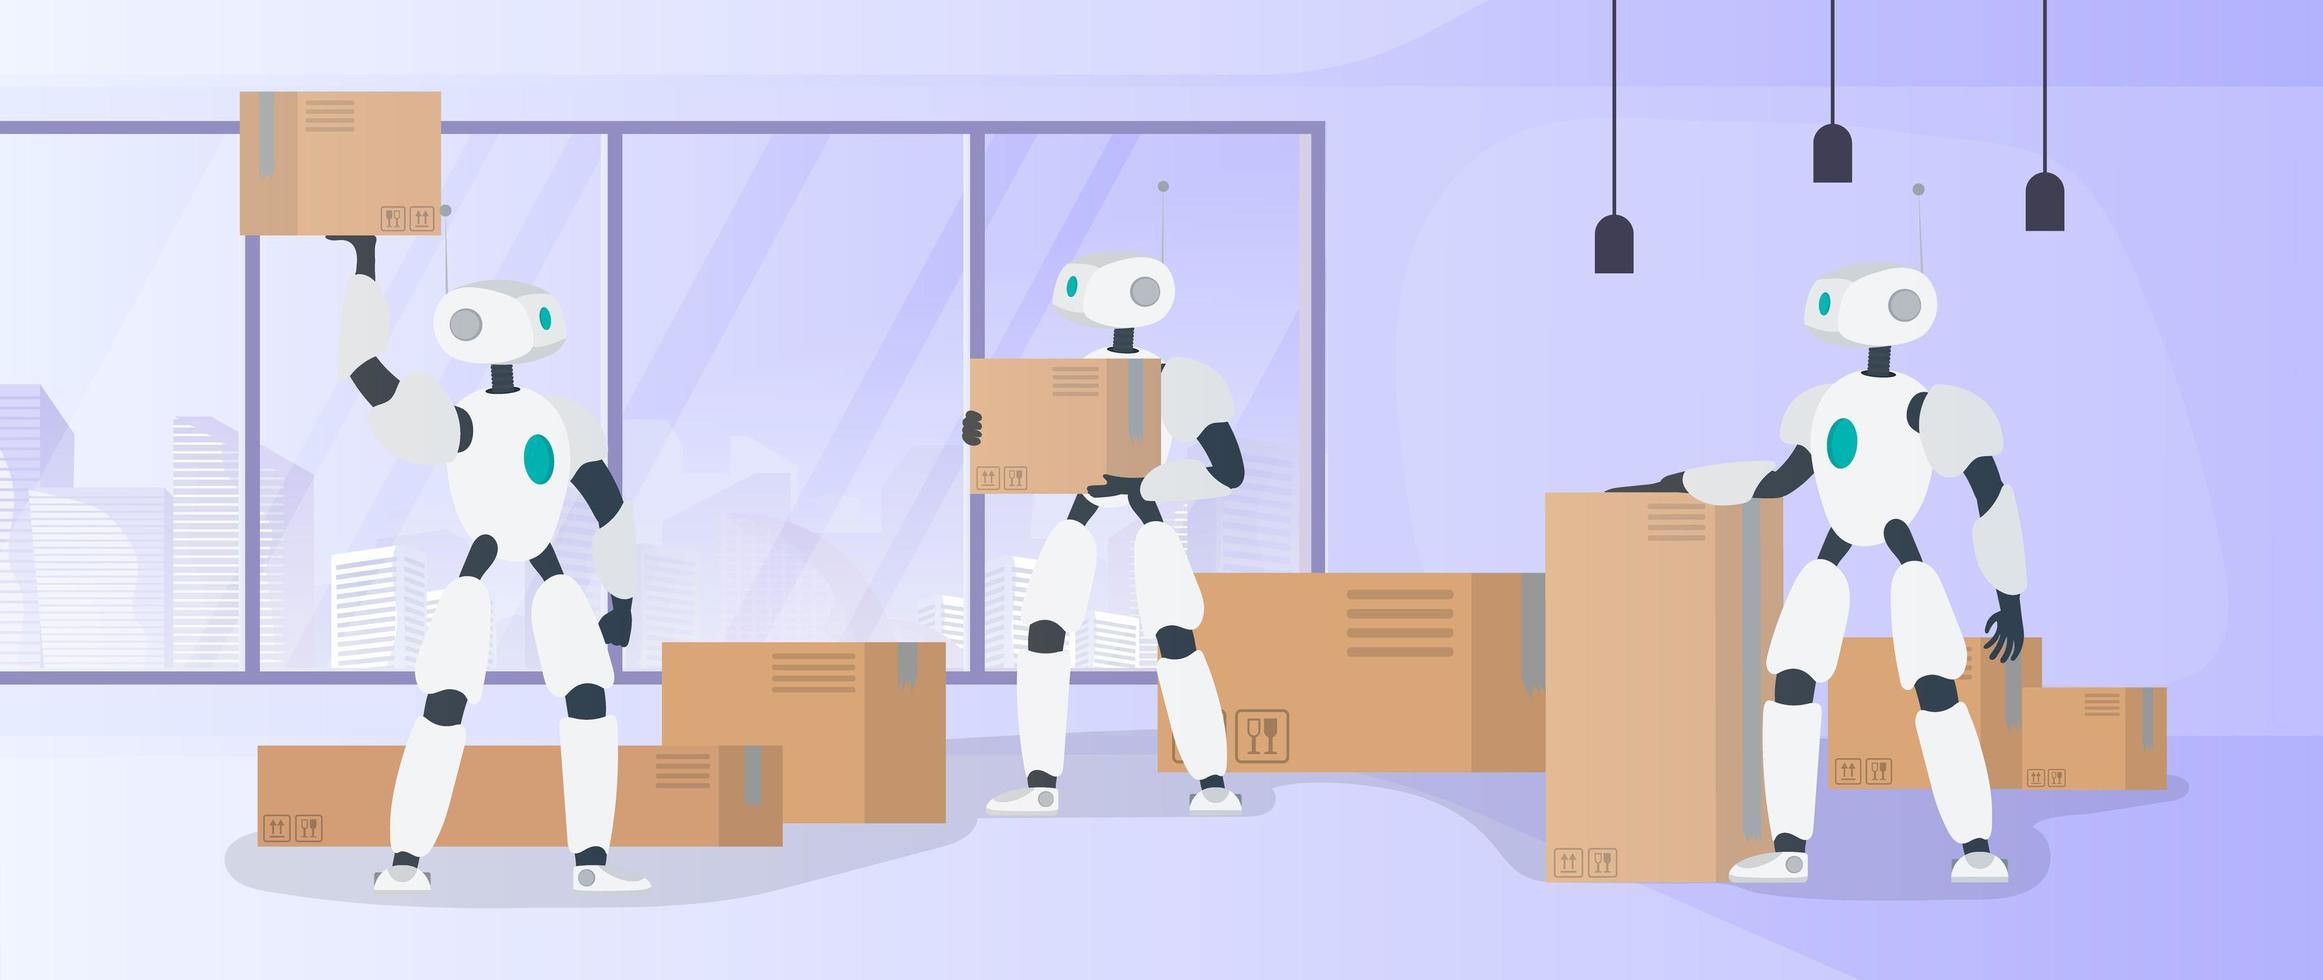 robotar arbetar i ett tillverkningslager. robotar bär lådor och lyfter lasten. futuristiskt koncept för leverans, transport och lastning av varor. vektor. vektor